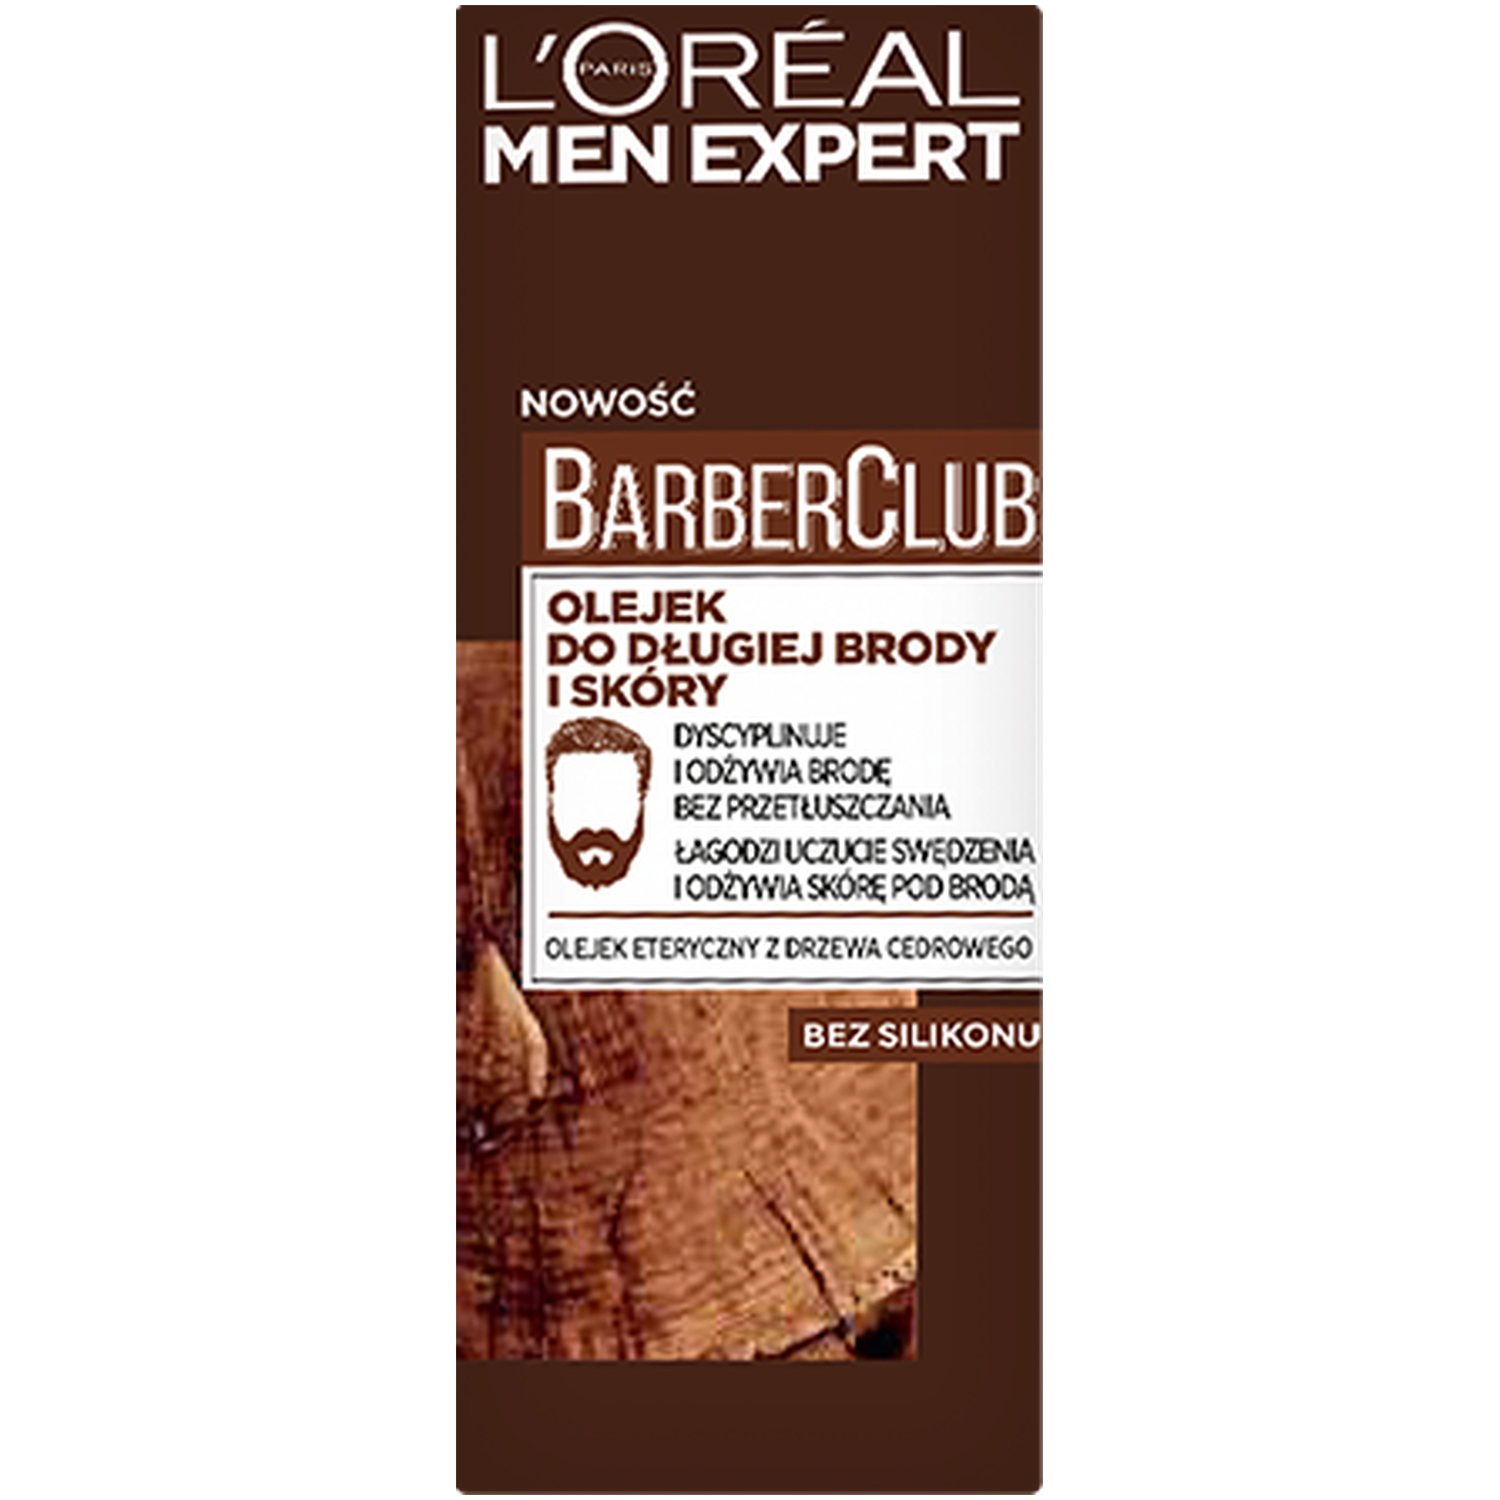 L'Oréal Paris Men Expert Barber Club масло для ухода за длинной бородой и кожей, 30 мл масло для бороды men expert barber club cedarwood для ежедневного ухода за бородой 30 мл l oreal